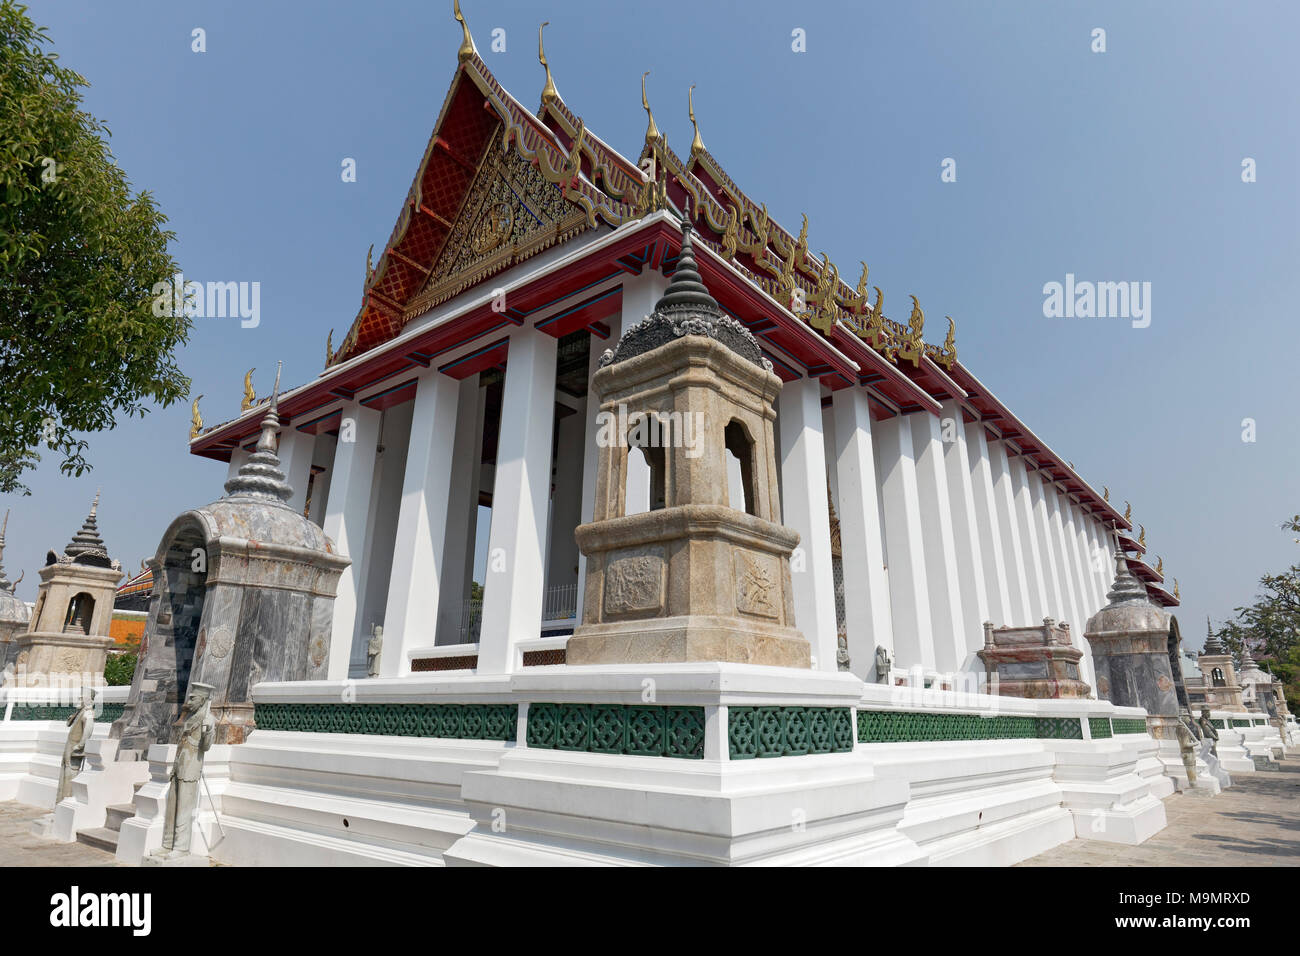 Ubosot of Wat Suthat, Royal Temple, Phra Nakhon, Bangkok, Thailand Stock Photo